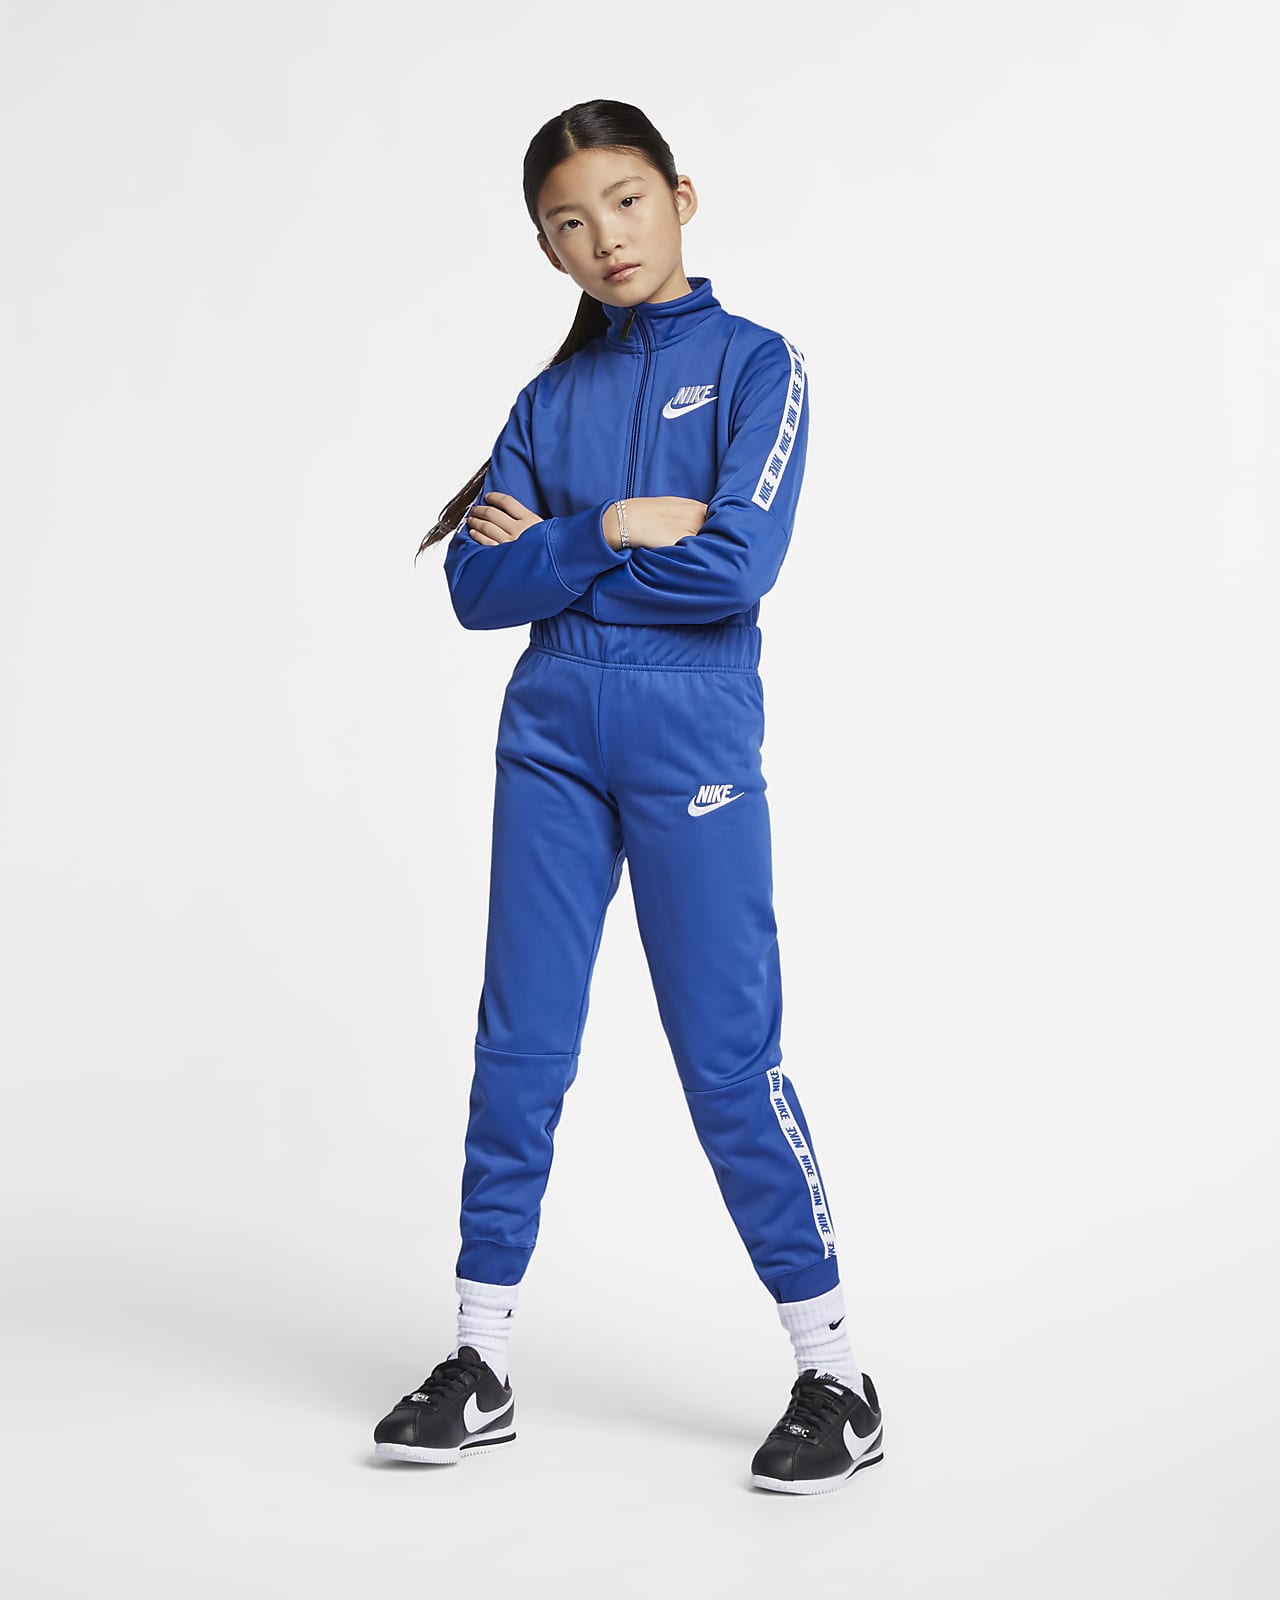 Nike Sportswear Girls' Tracksuit